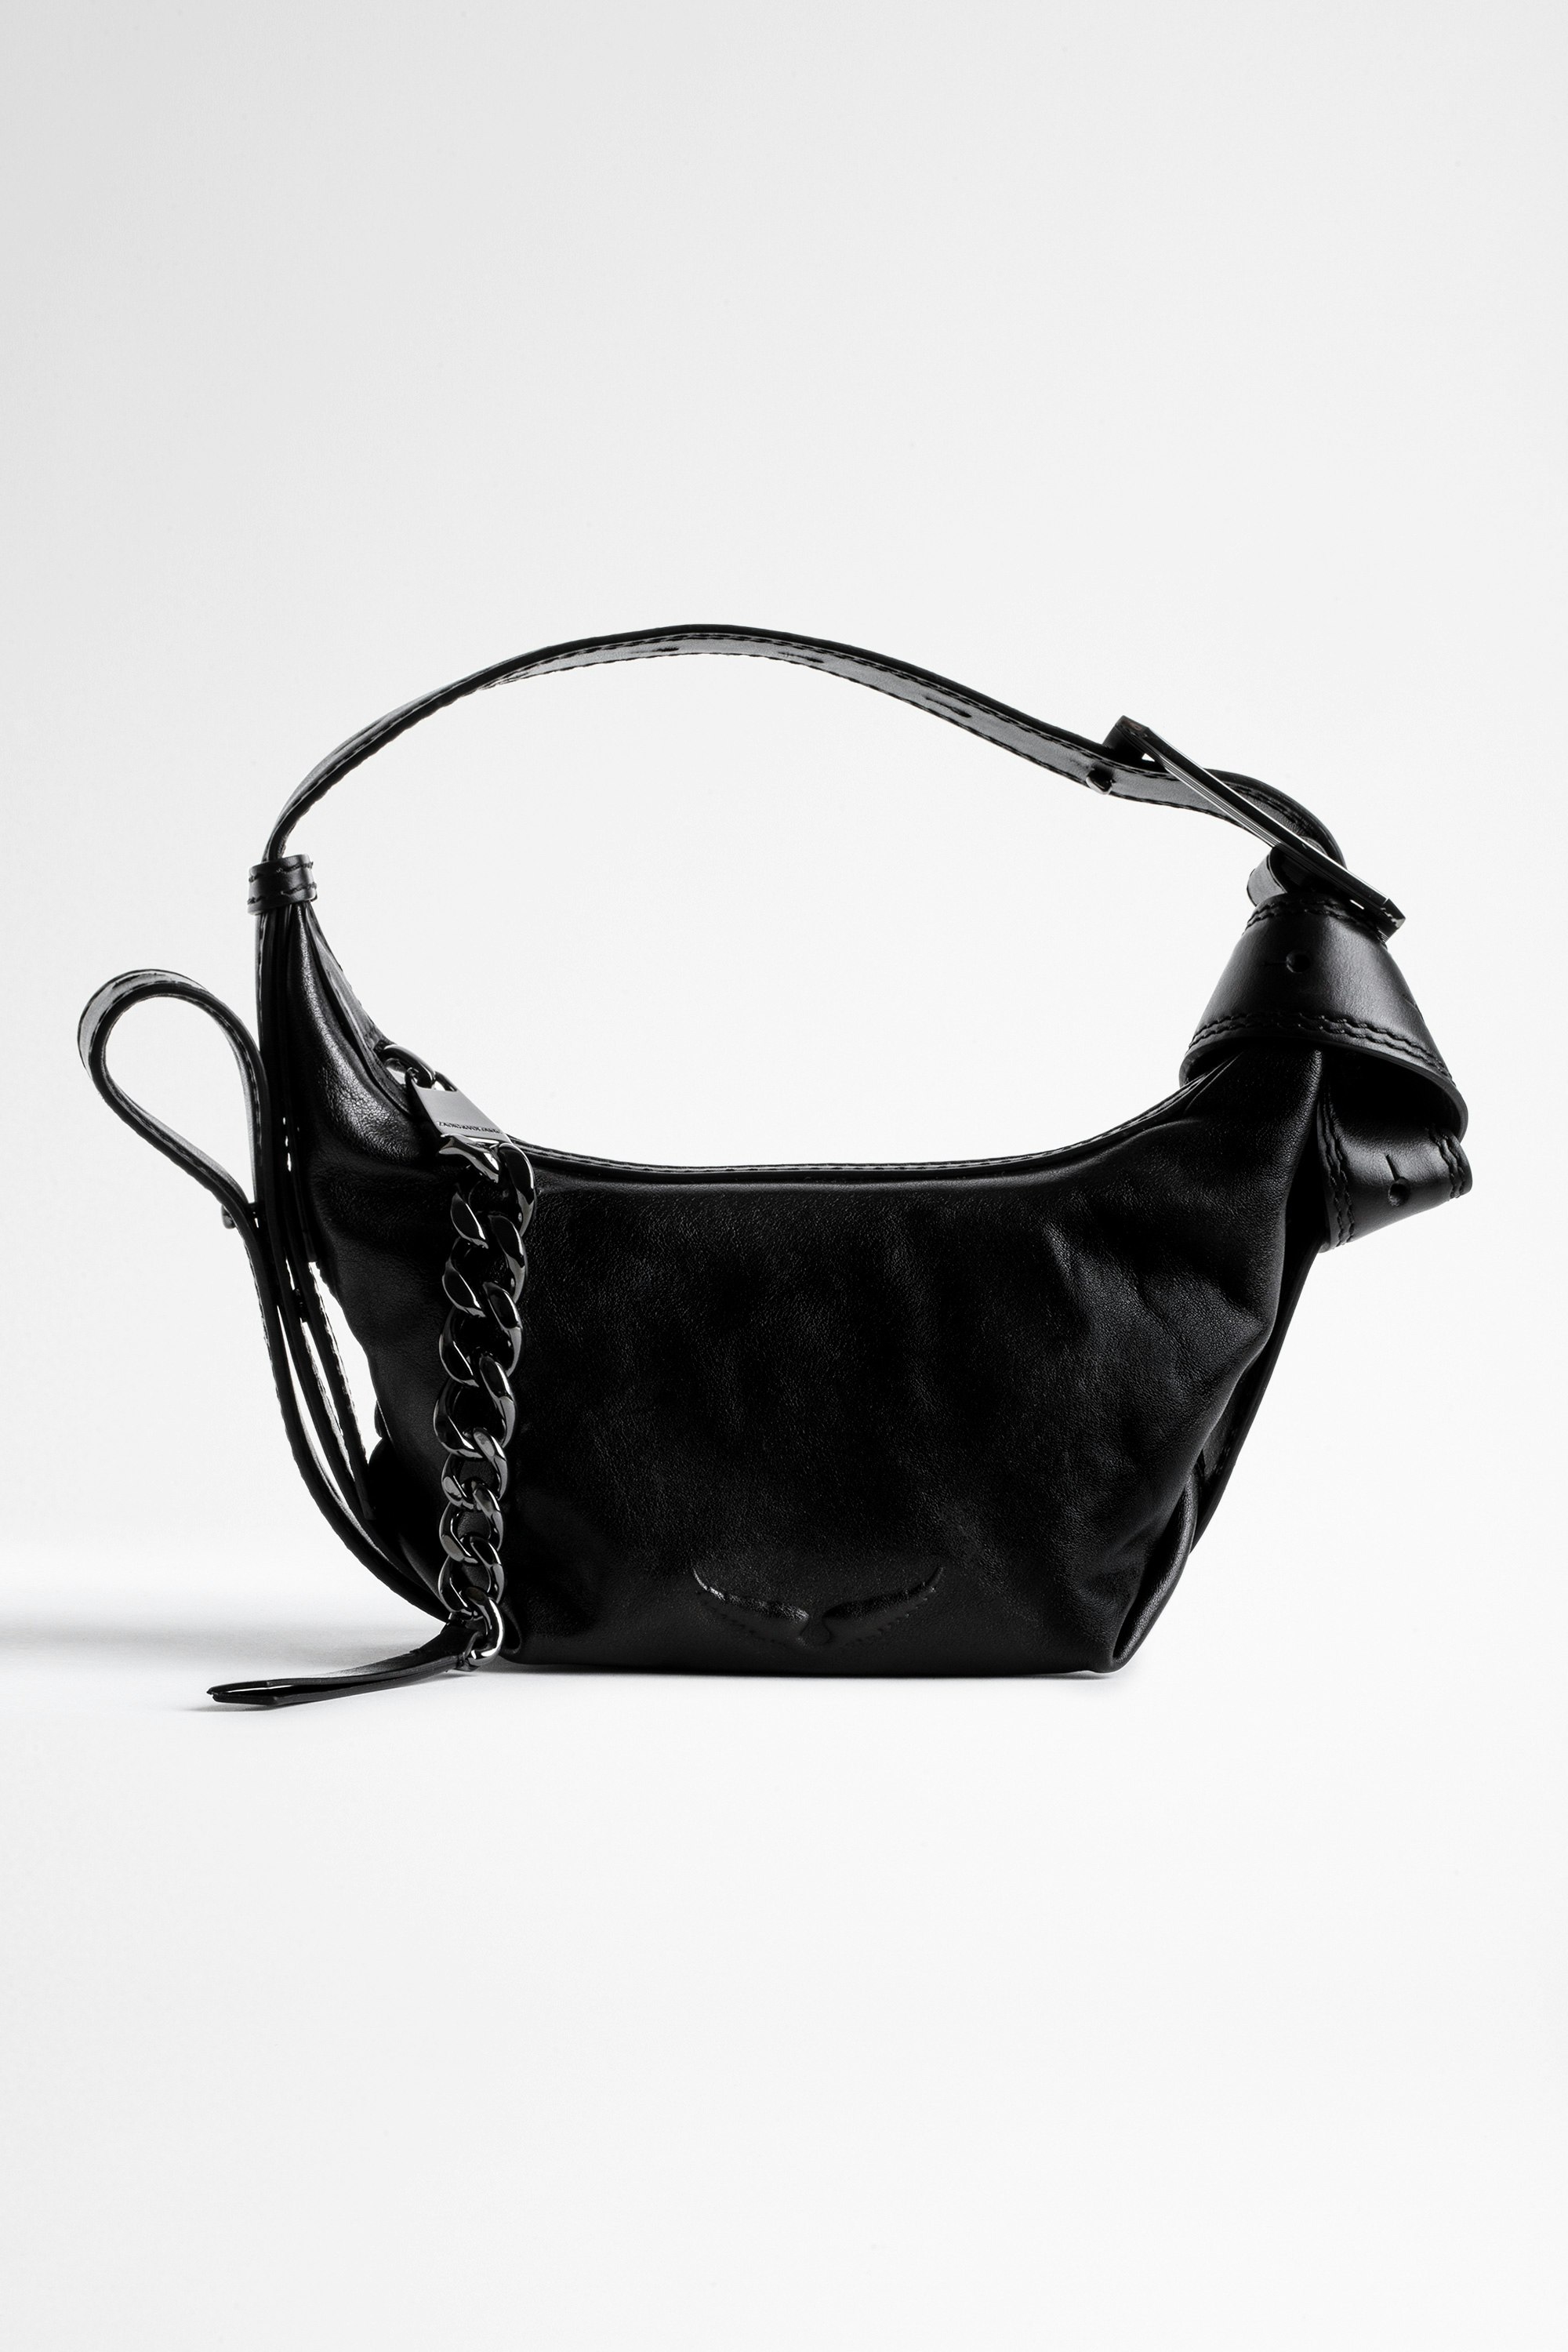 Handtasche Le Cecilia XS - Ikonische Damen-Handtasche Le Cecilia XS aus schwarzem, pflanzlich gegerbtem, italienischem Leder.